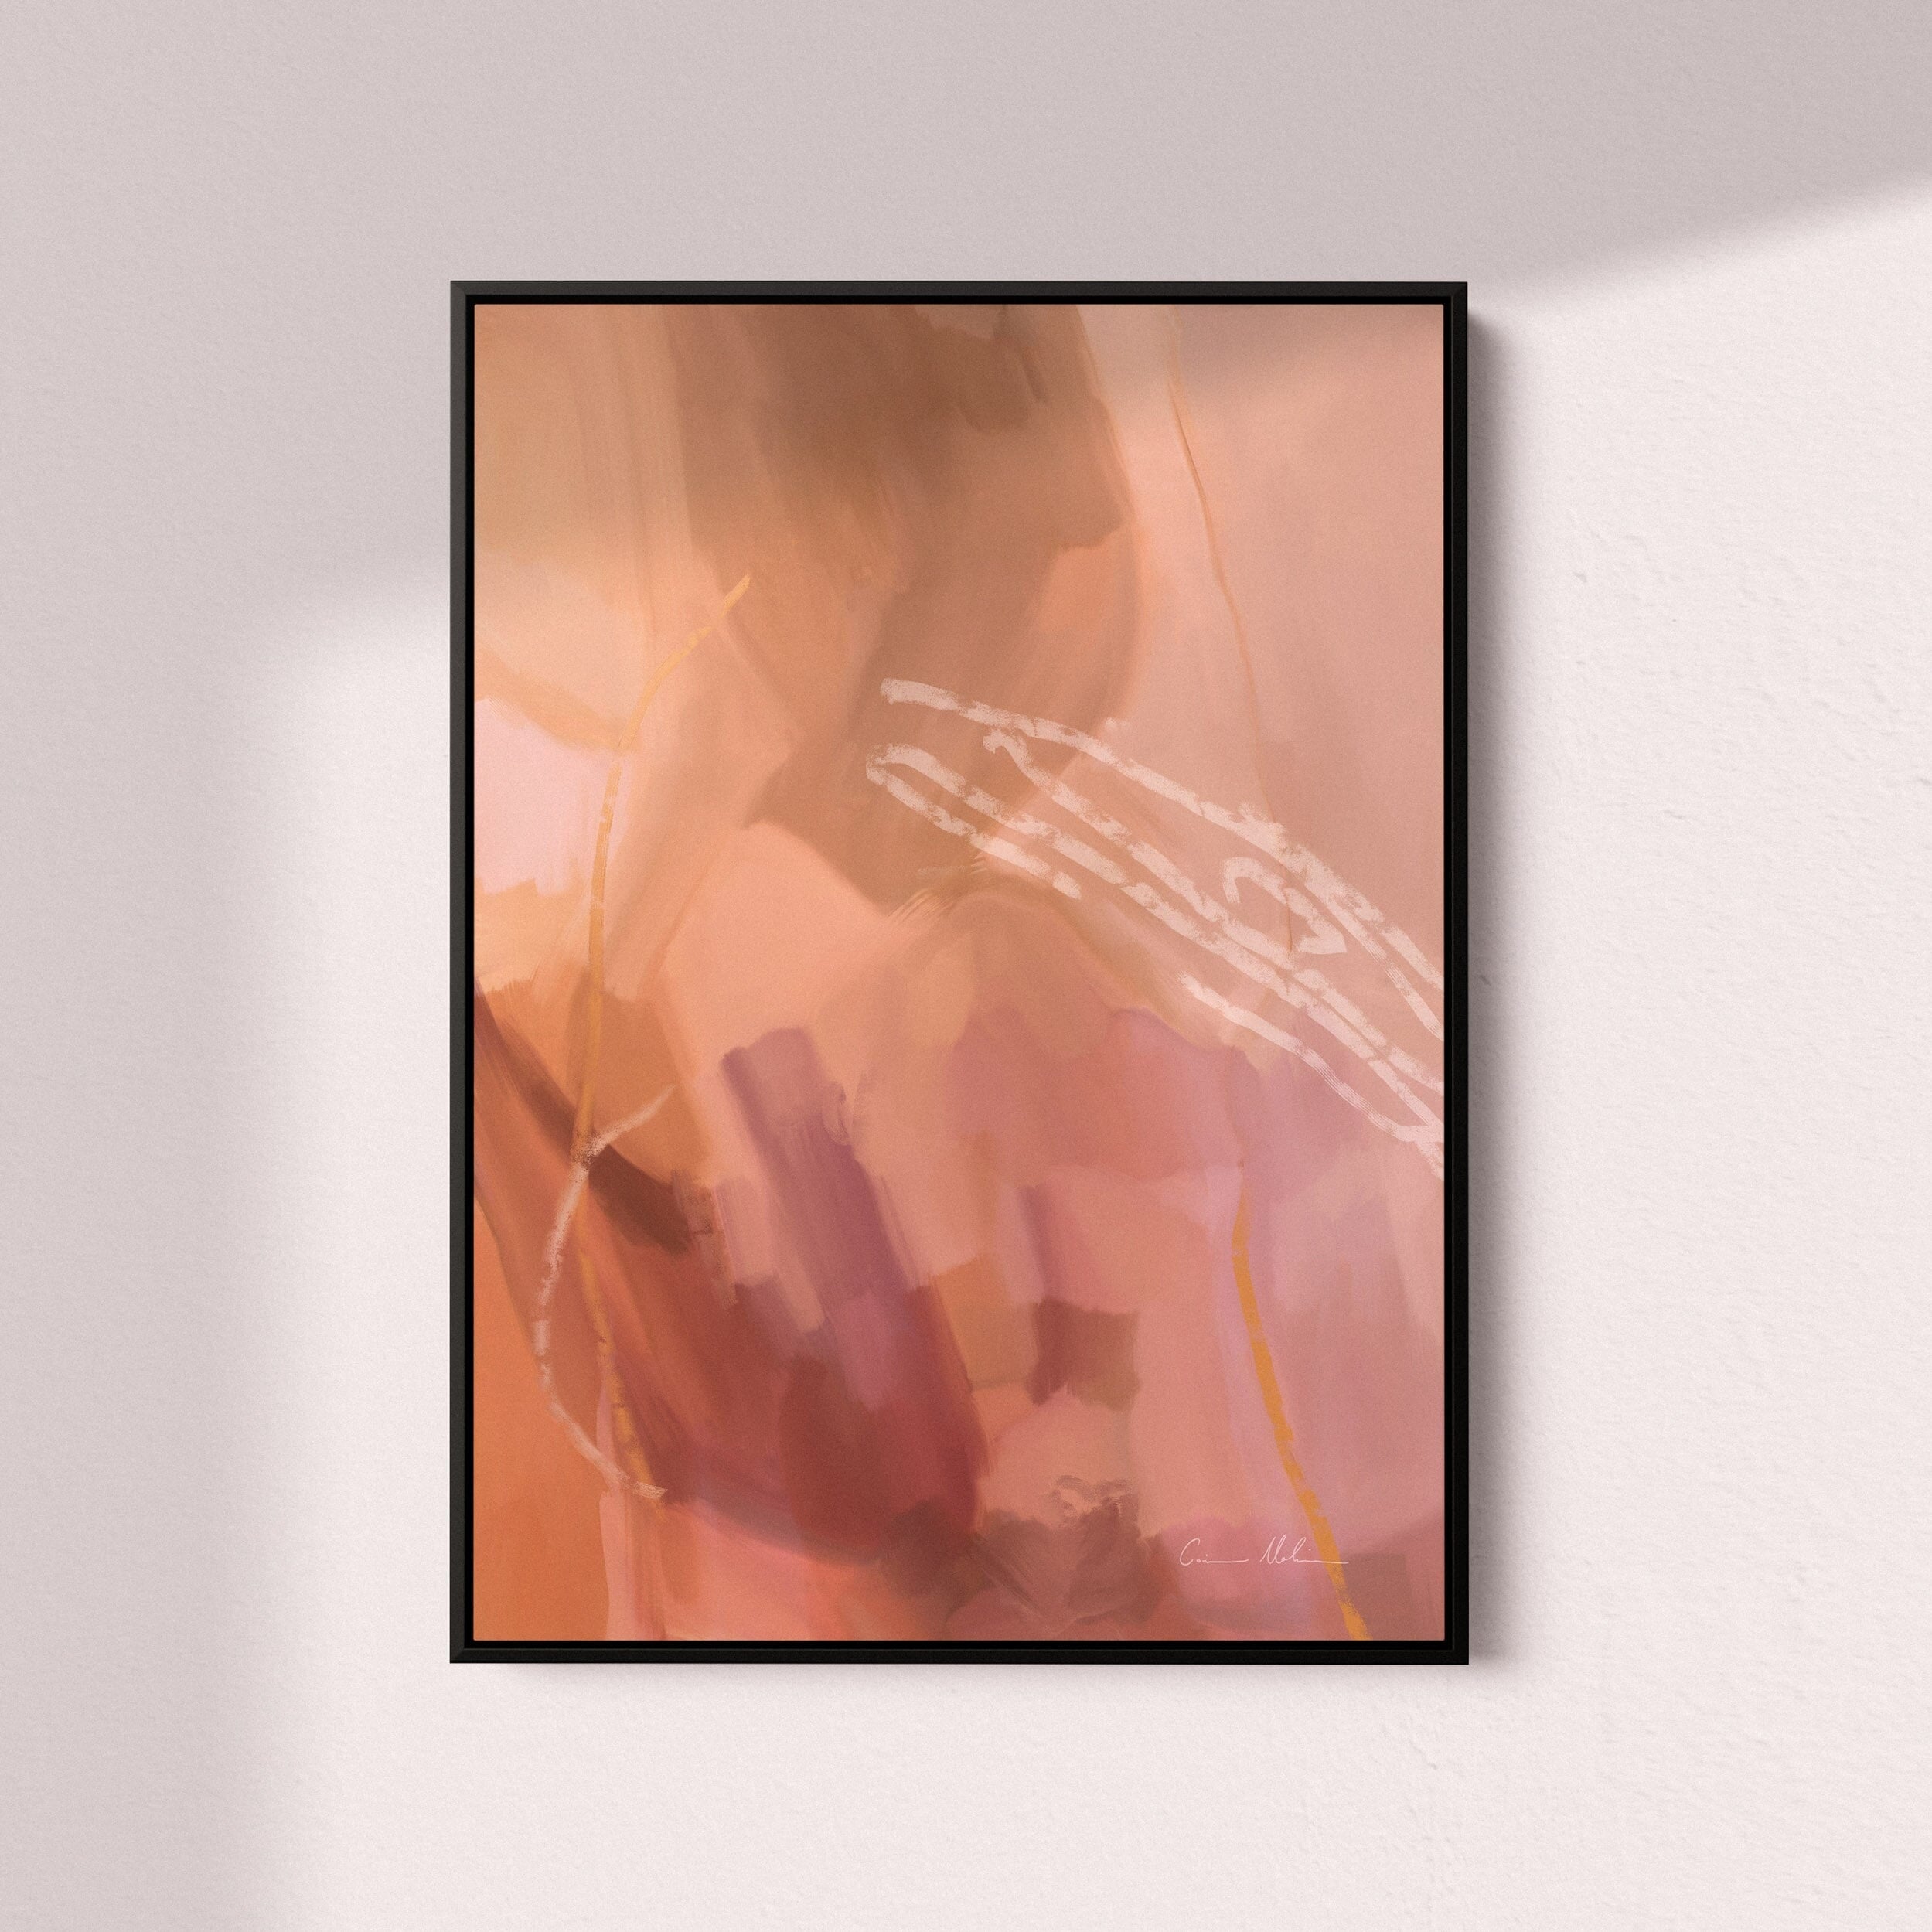 "Gold Coast" on Canvas - Portrait II Canvas Wall Art Corinne Melanie Art Professionally Framed - Black 24x32in / 60x80cm 